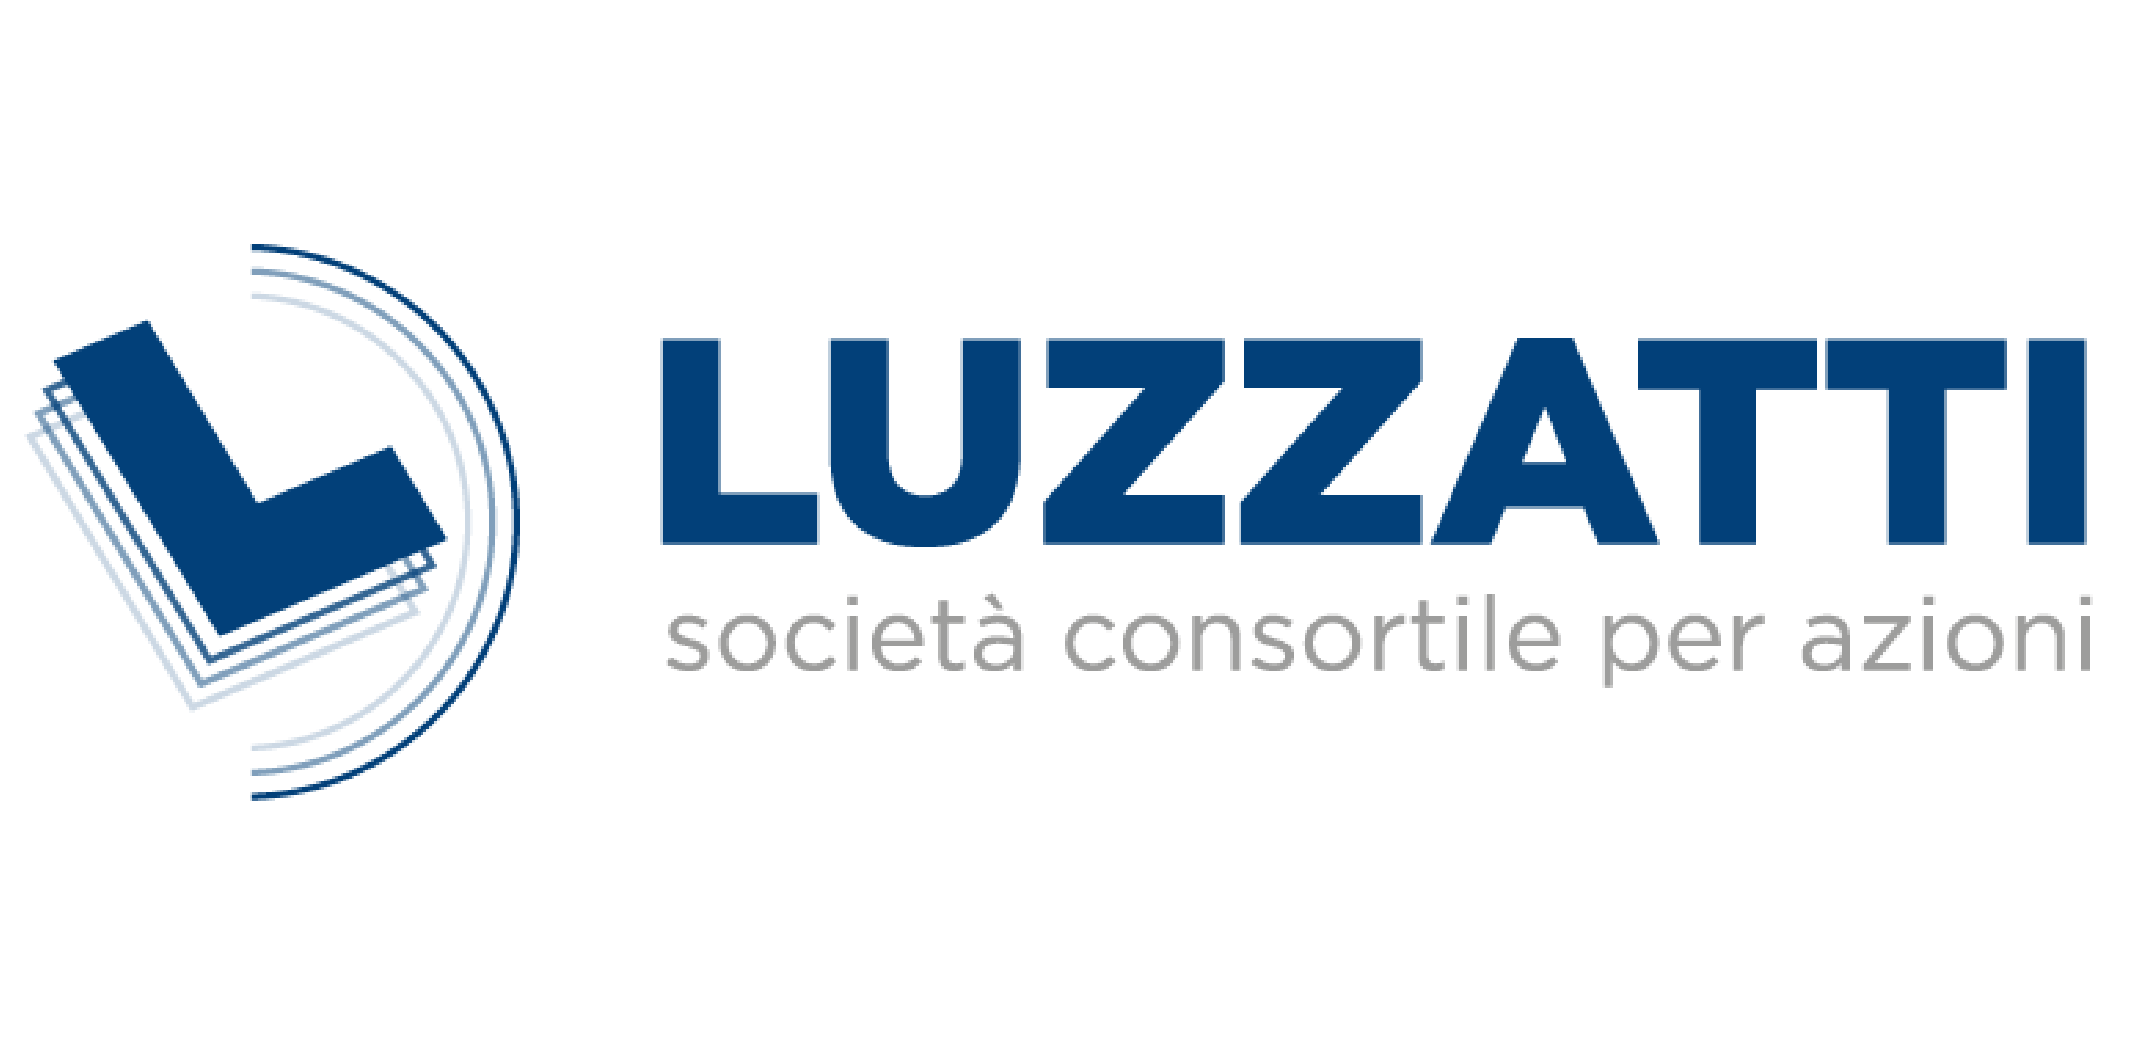 Luzzatti